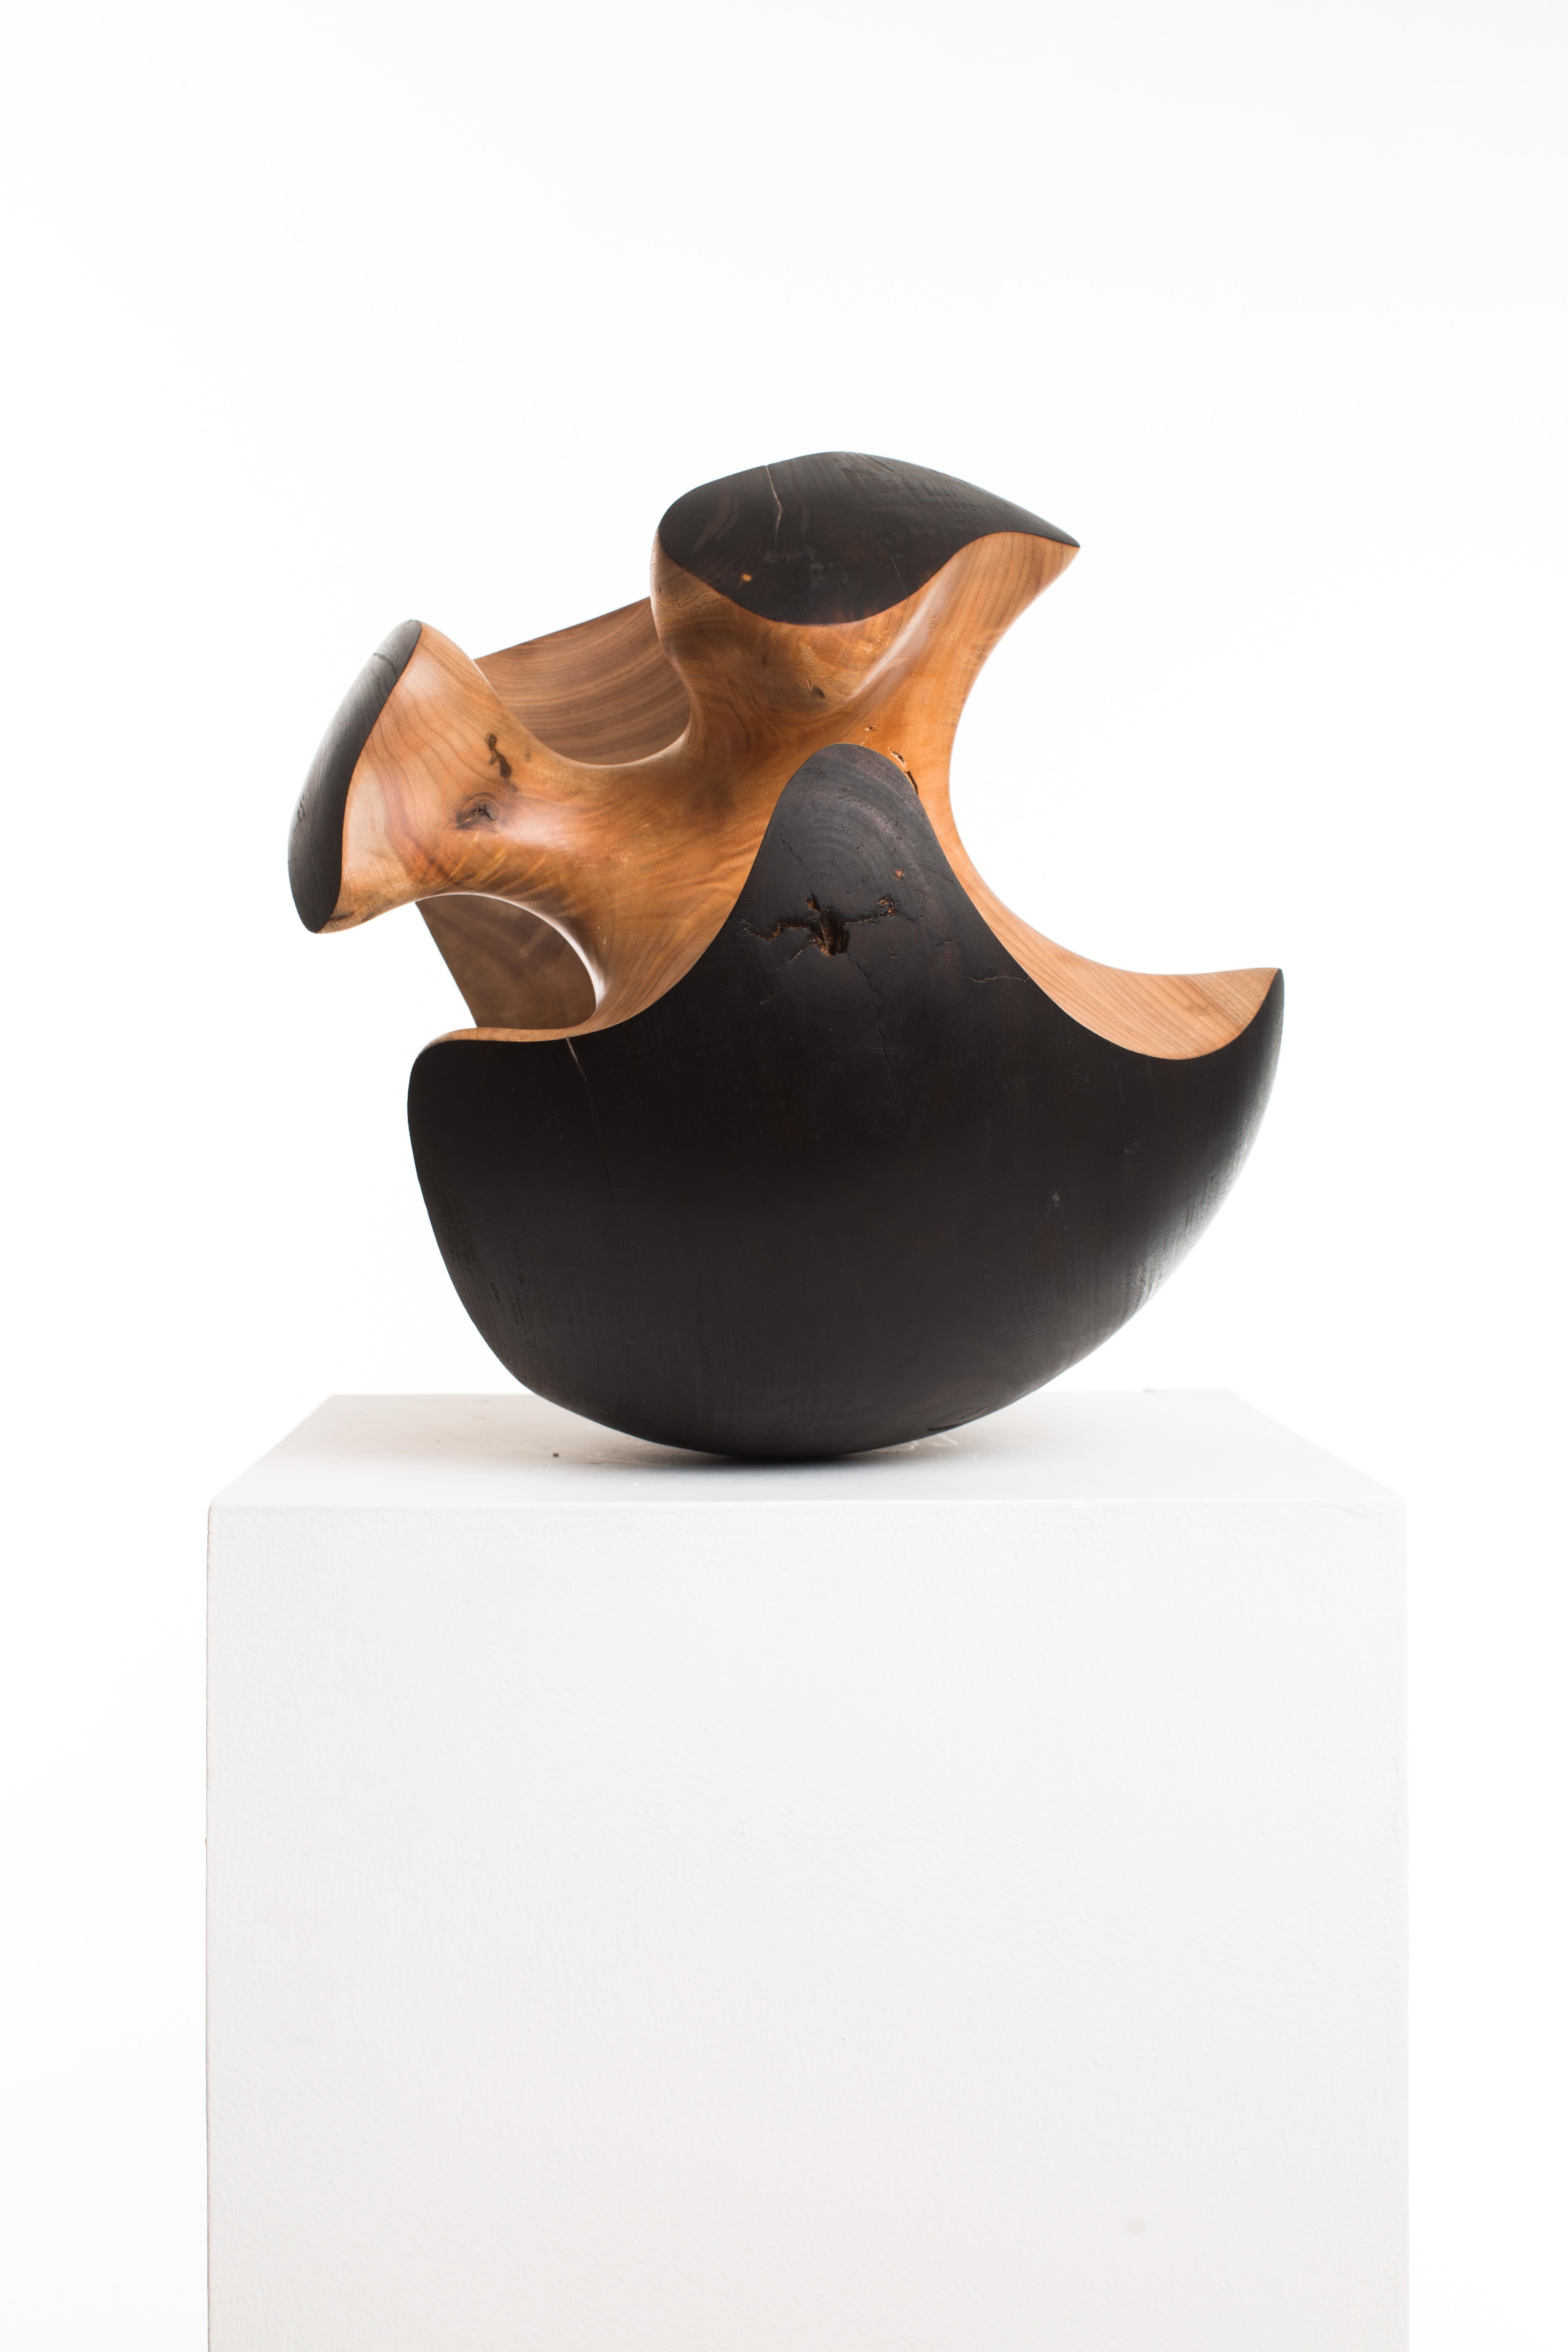 Driaan Claassen for Reticence, Abstract Geometric Sculpture, Wooden Sphere 004 1